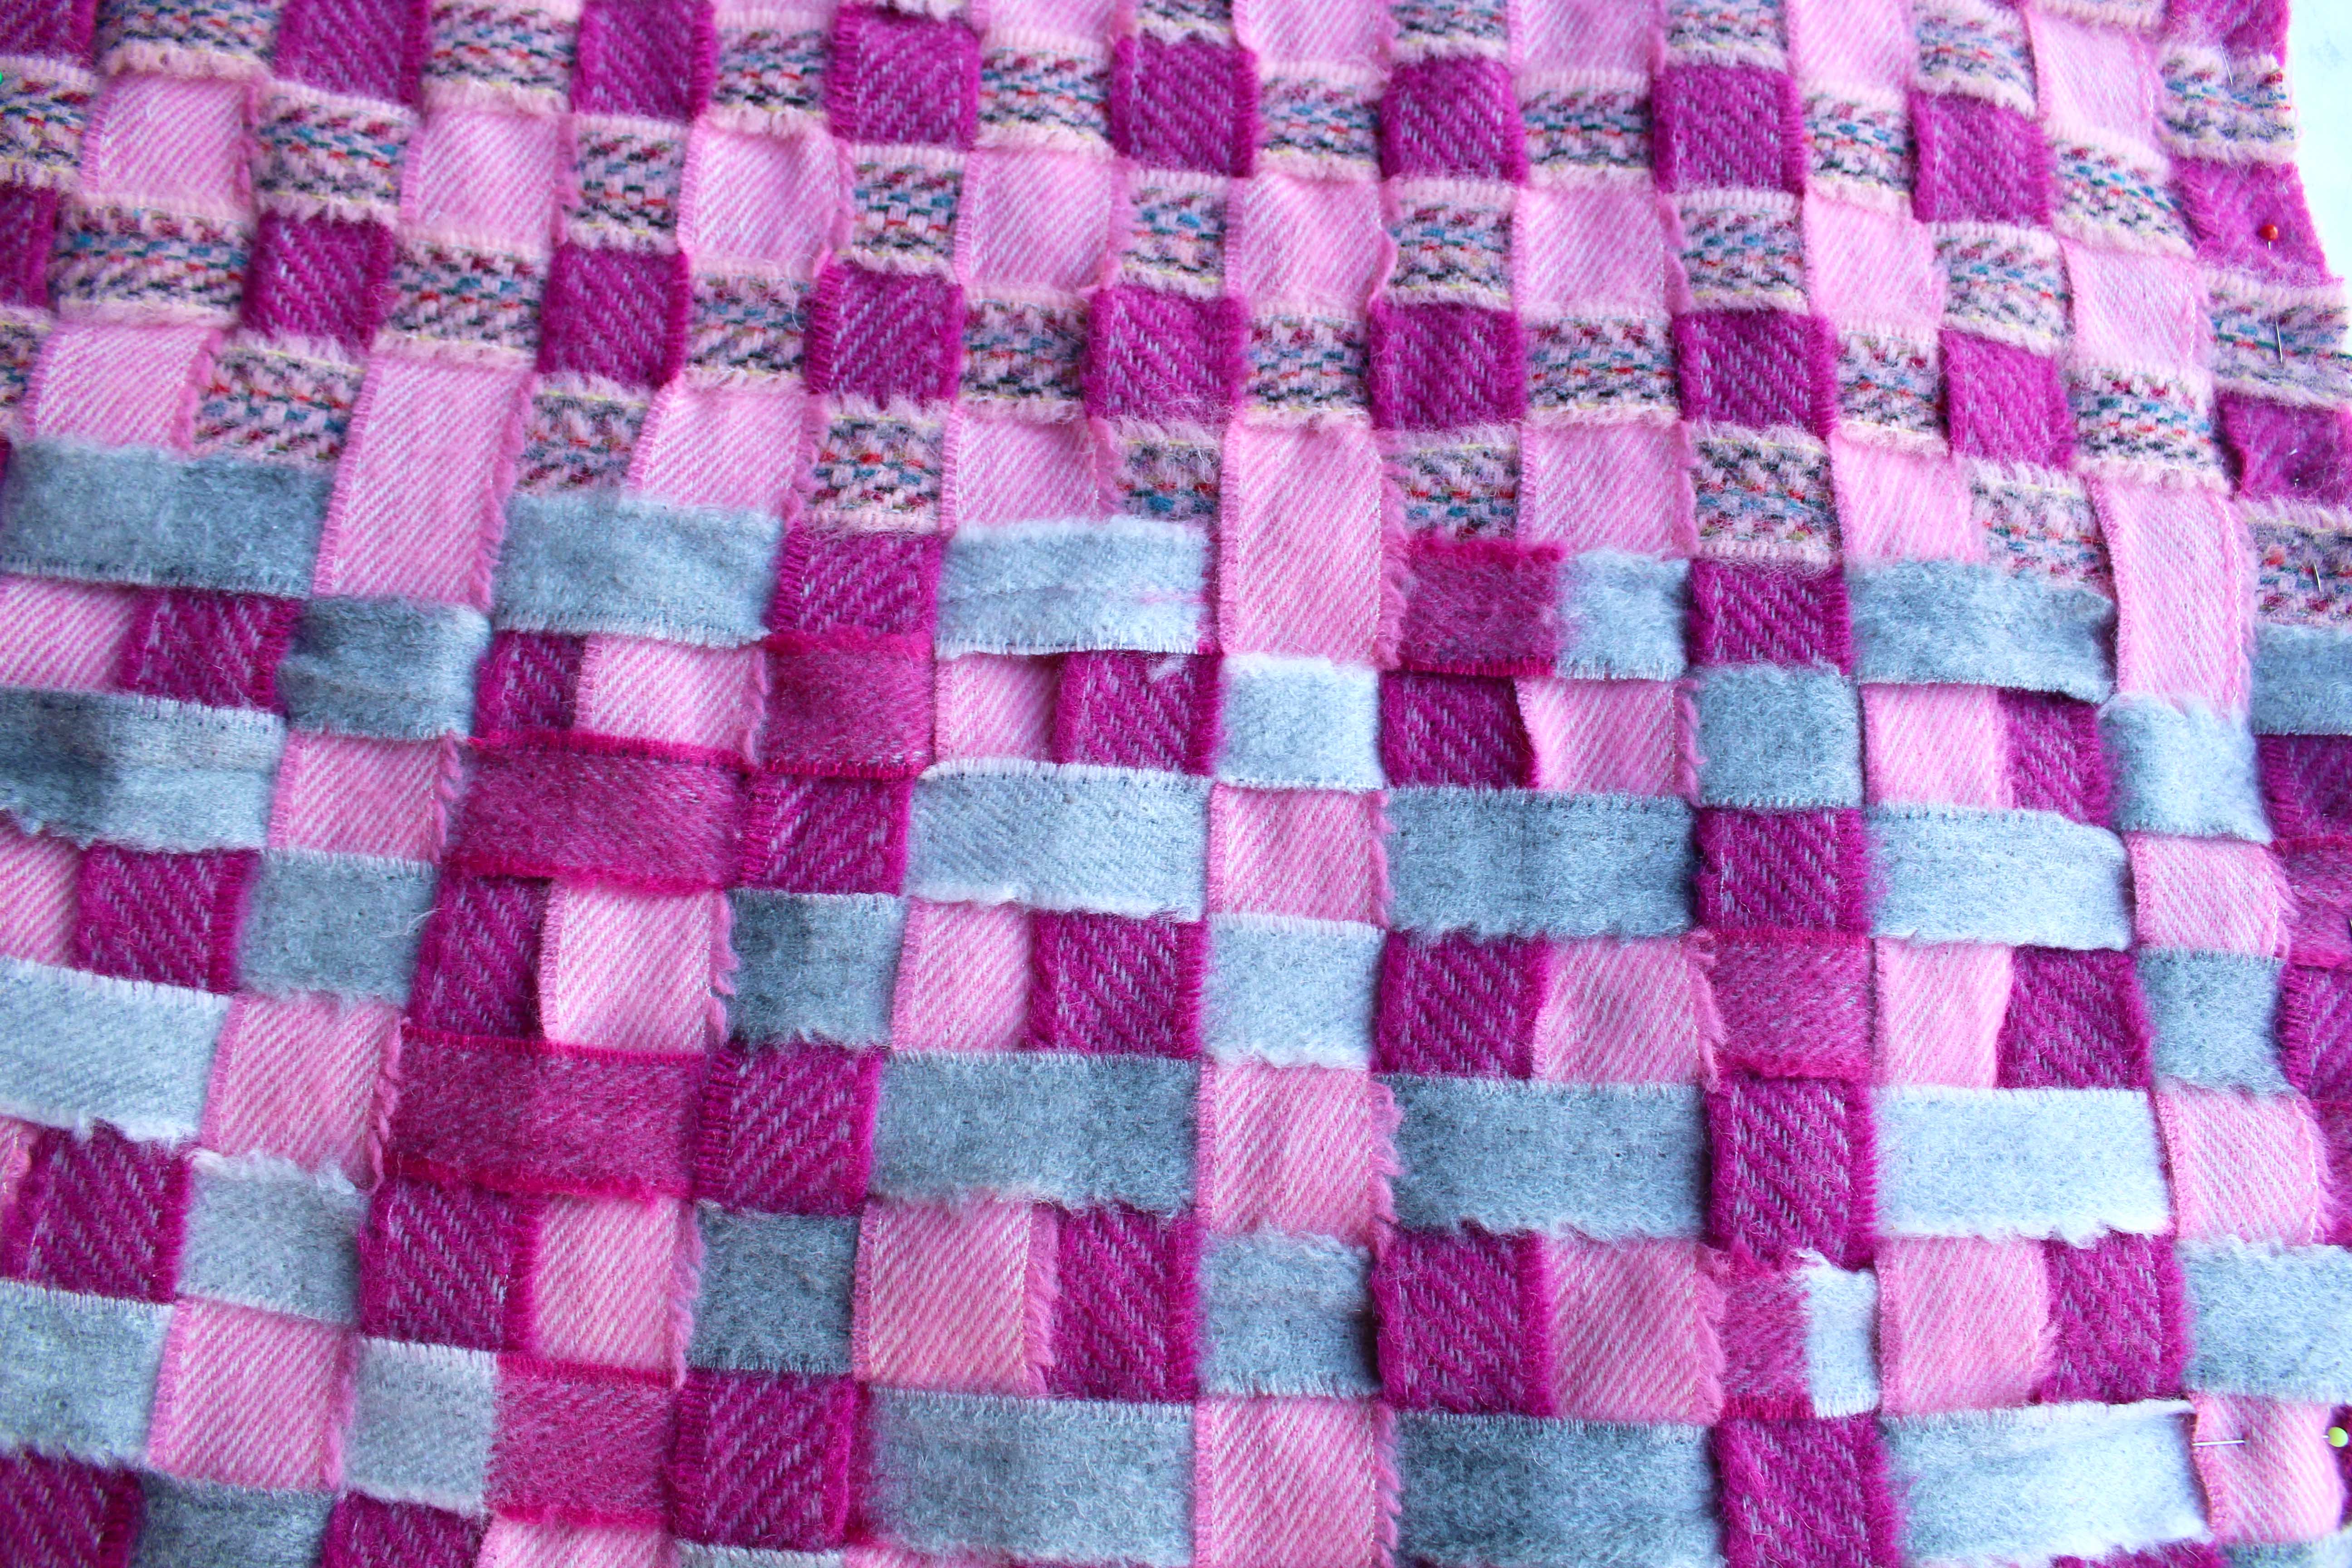 Ribbon Blanket Yarn Weaving Work In Progress Purple Pink Grey